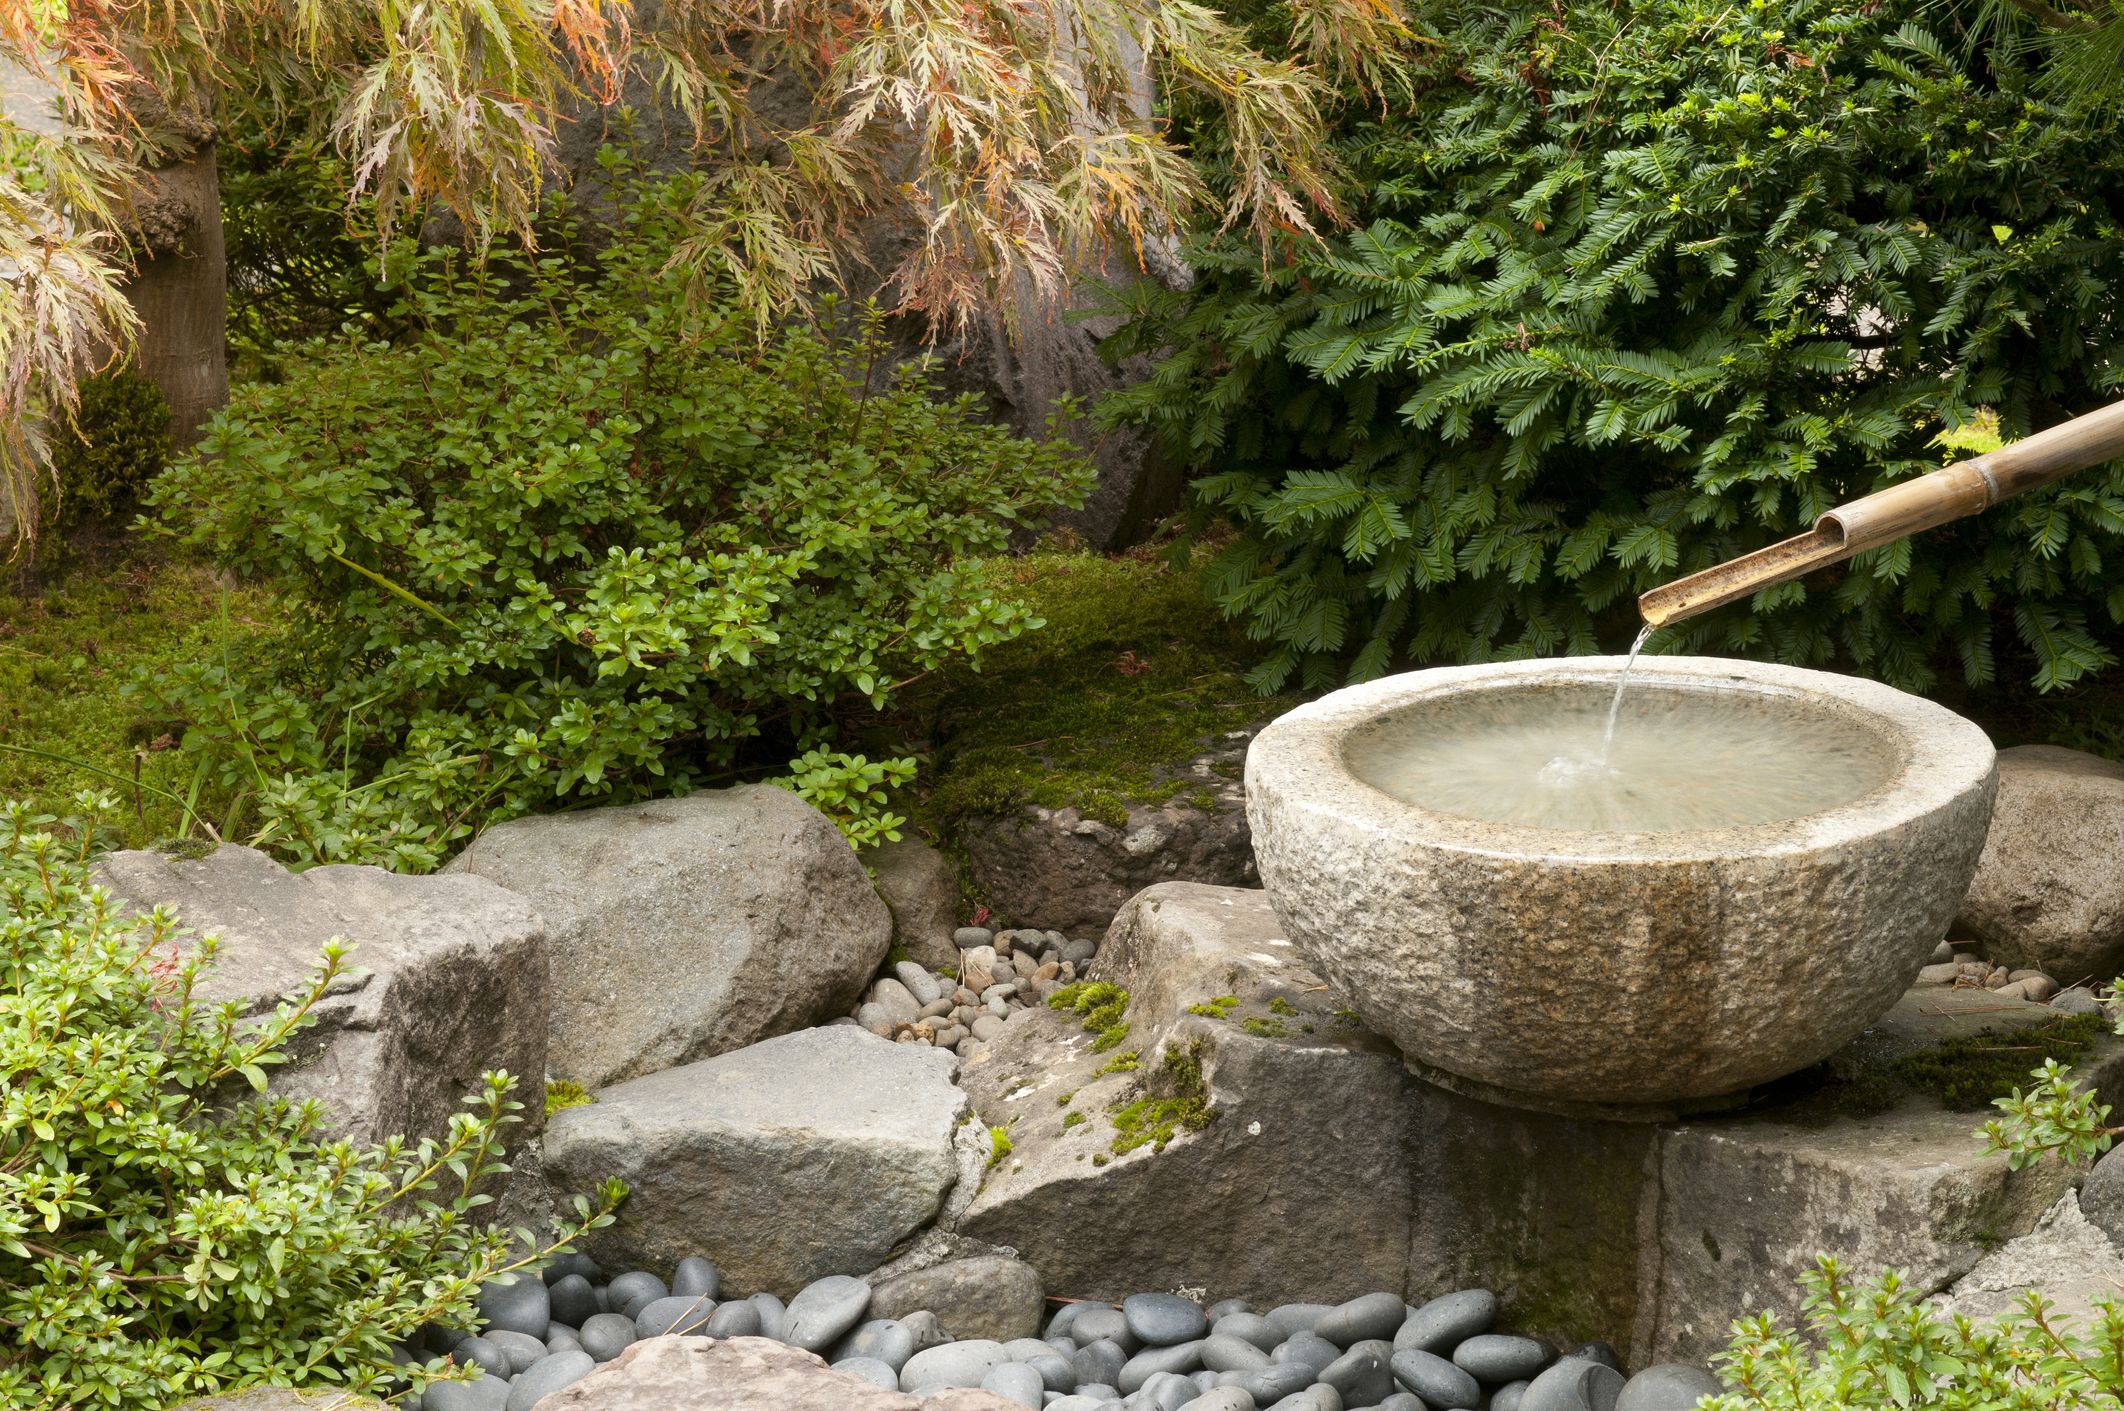 7 beneficios de tener un jardín zen en casa: ¿Cómo crear el tuyo?